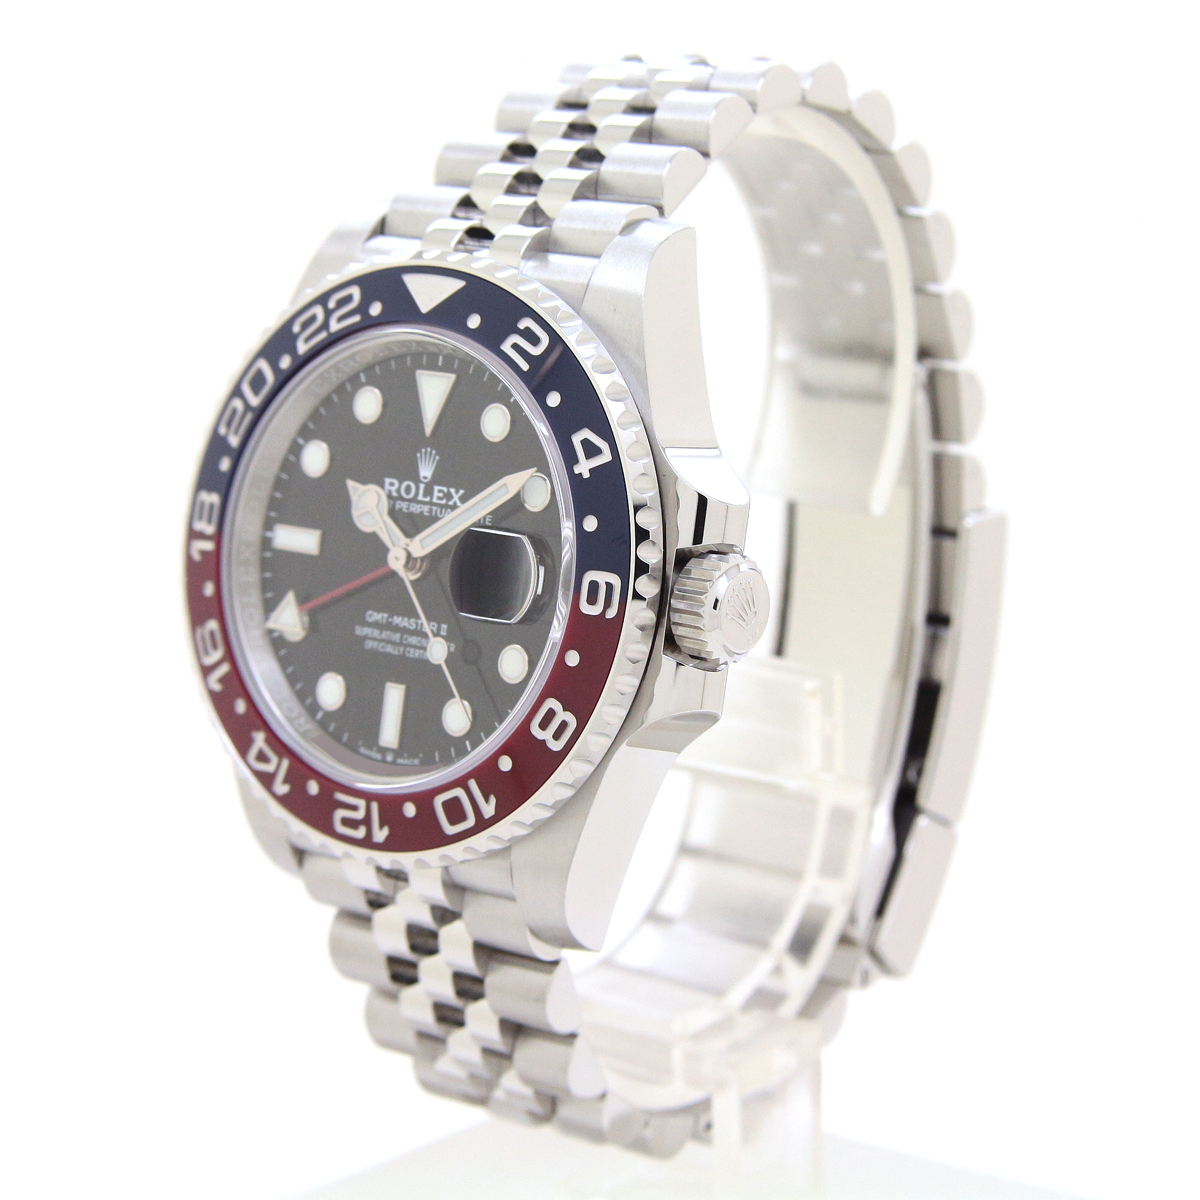 ロレックス（ROLEX）GMTマスターII 126710BLRO ペプシベゼル 2020年3月/ランダムシリアル メンズ 腕時計 未使用品_画像3